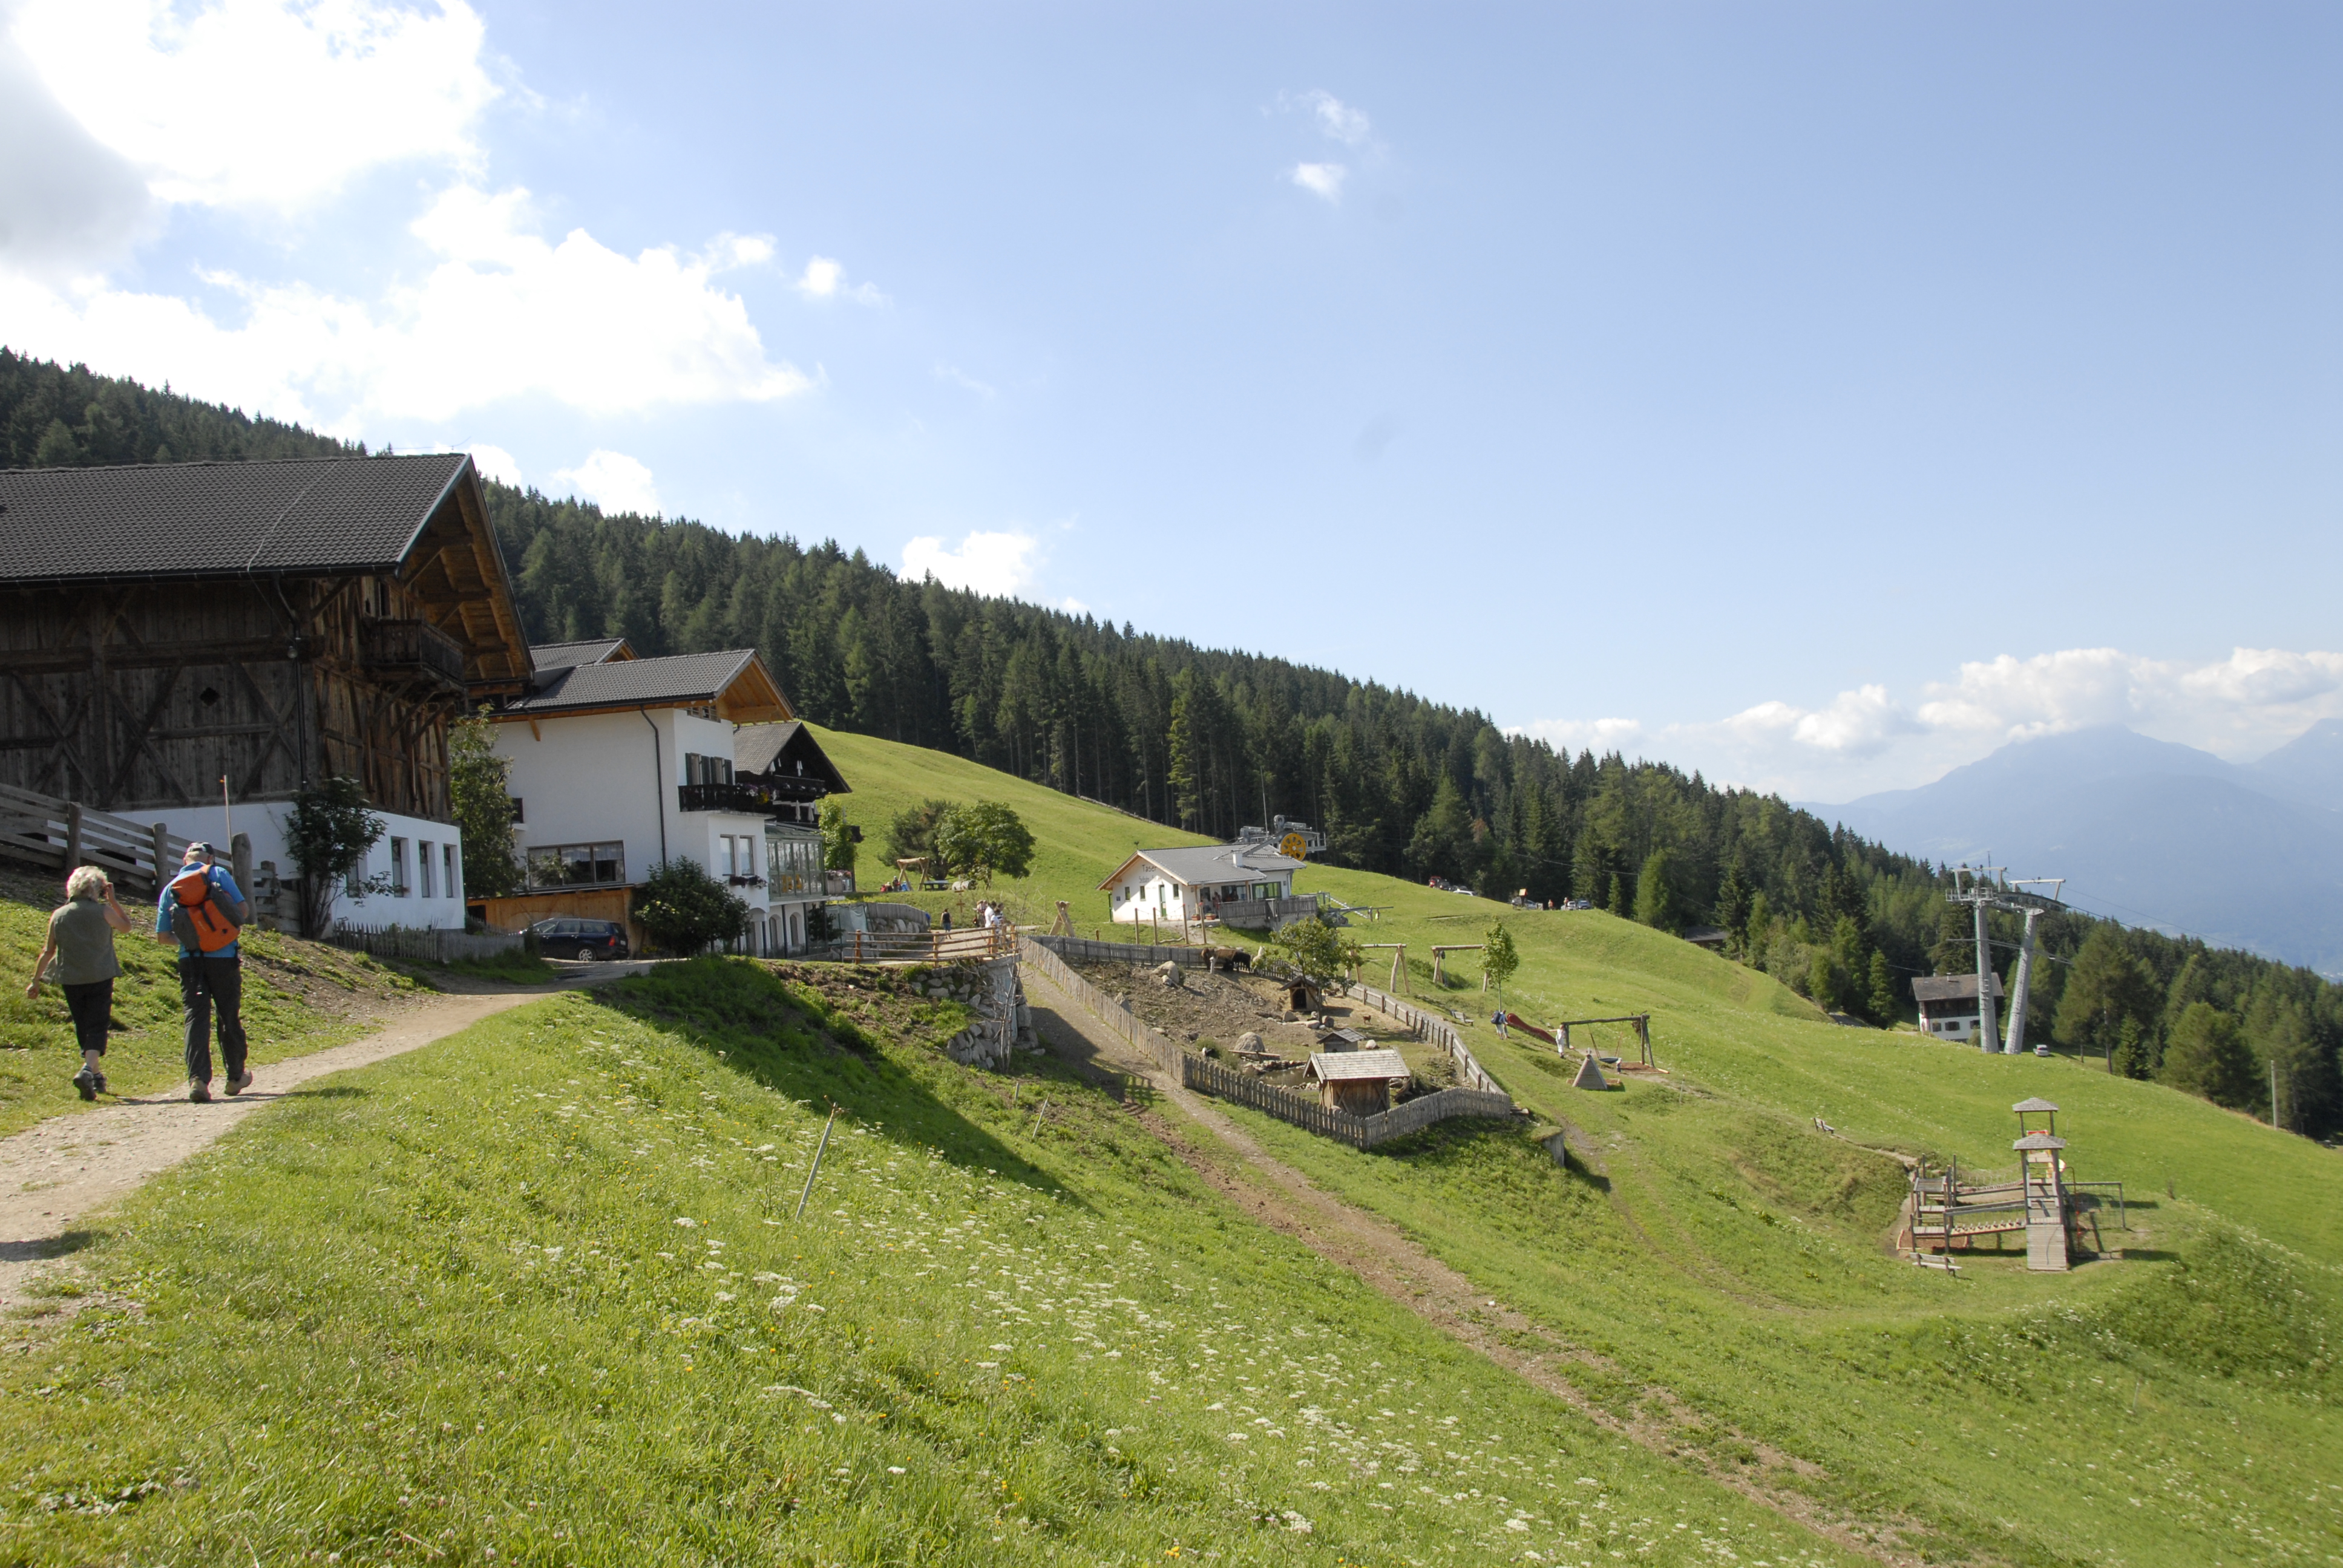 Familienausflug zur Taser Alm in Schenna, Südtirol